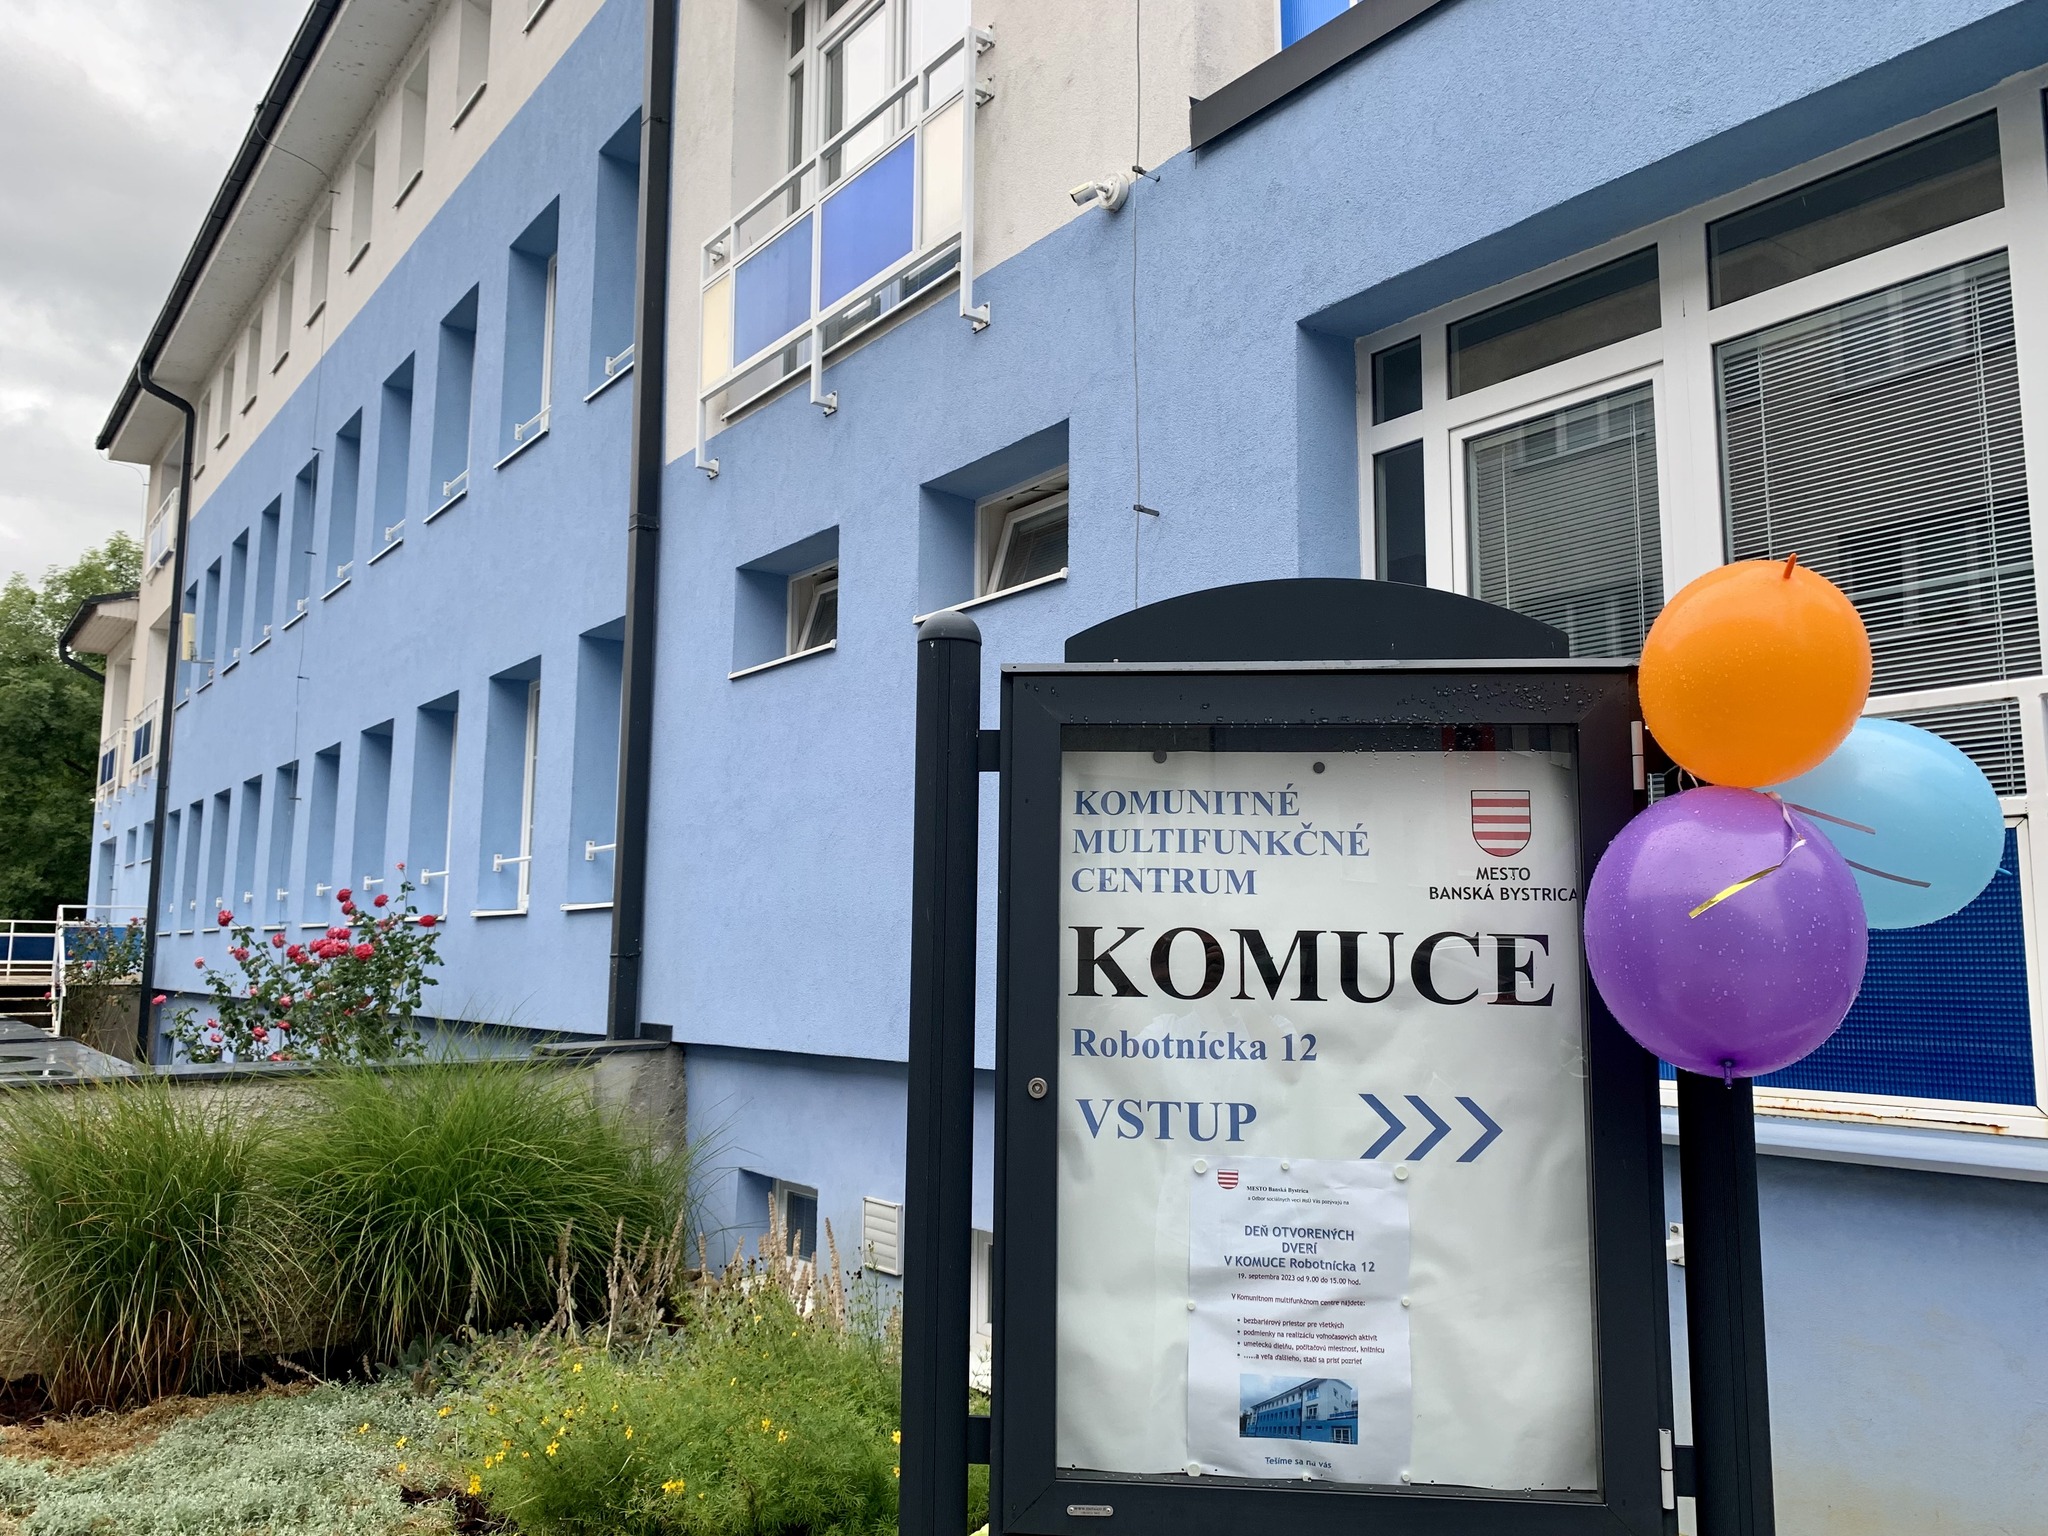 Deň otvorených dverí v Komunitnom multifunkčnom centre v Banskej Bystrici - Spájanie a budovanie nových partnerstiev